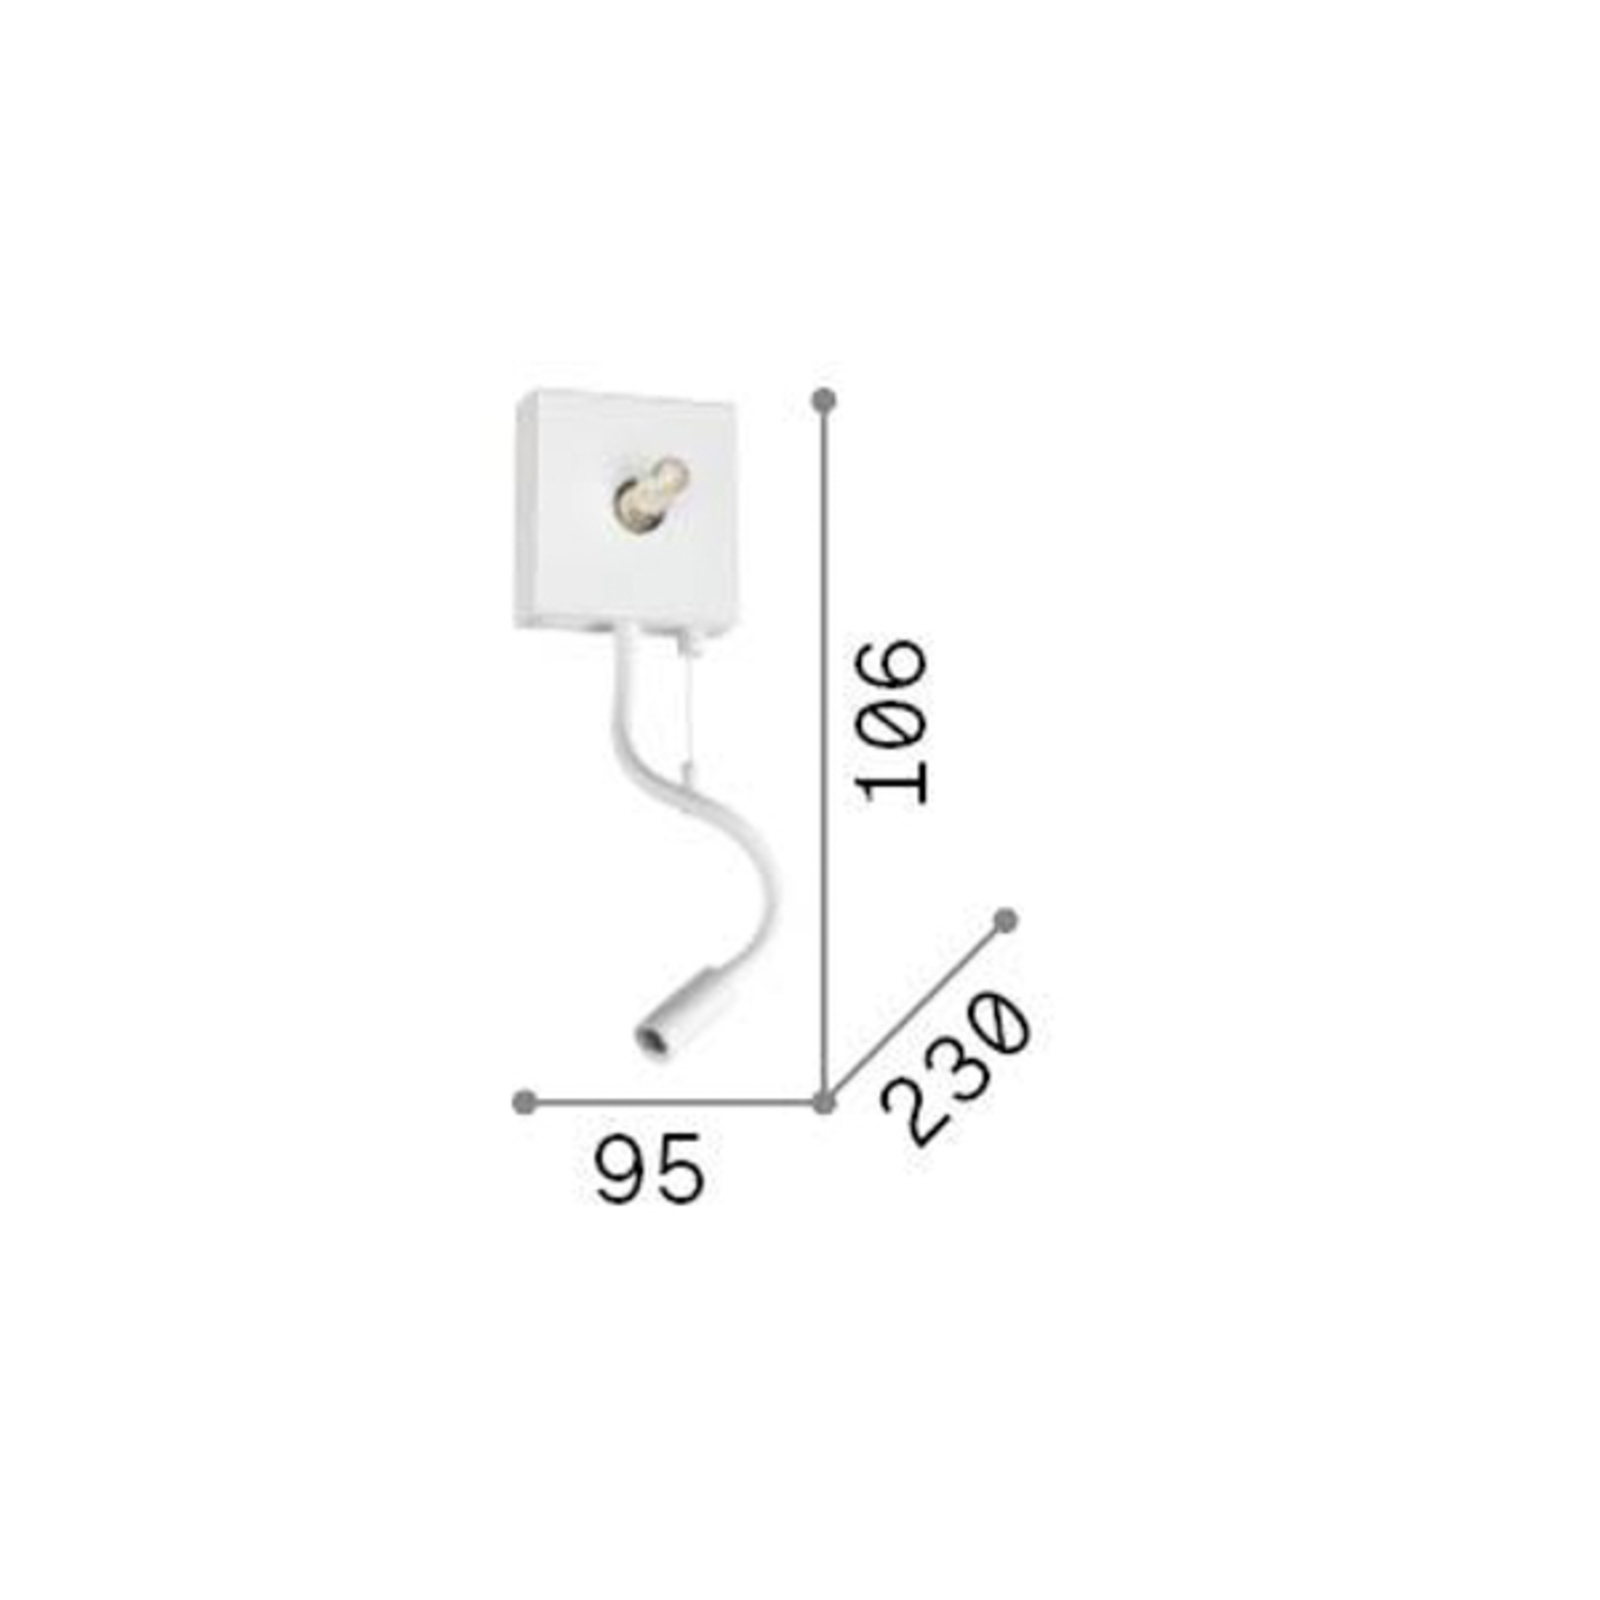 Ideal Lux stenska svetilka Kid bela tekstilna LED svetilka za branje USB